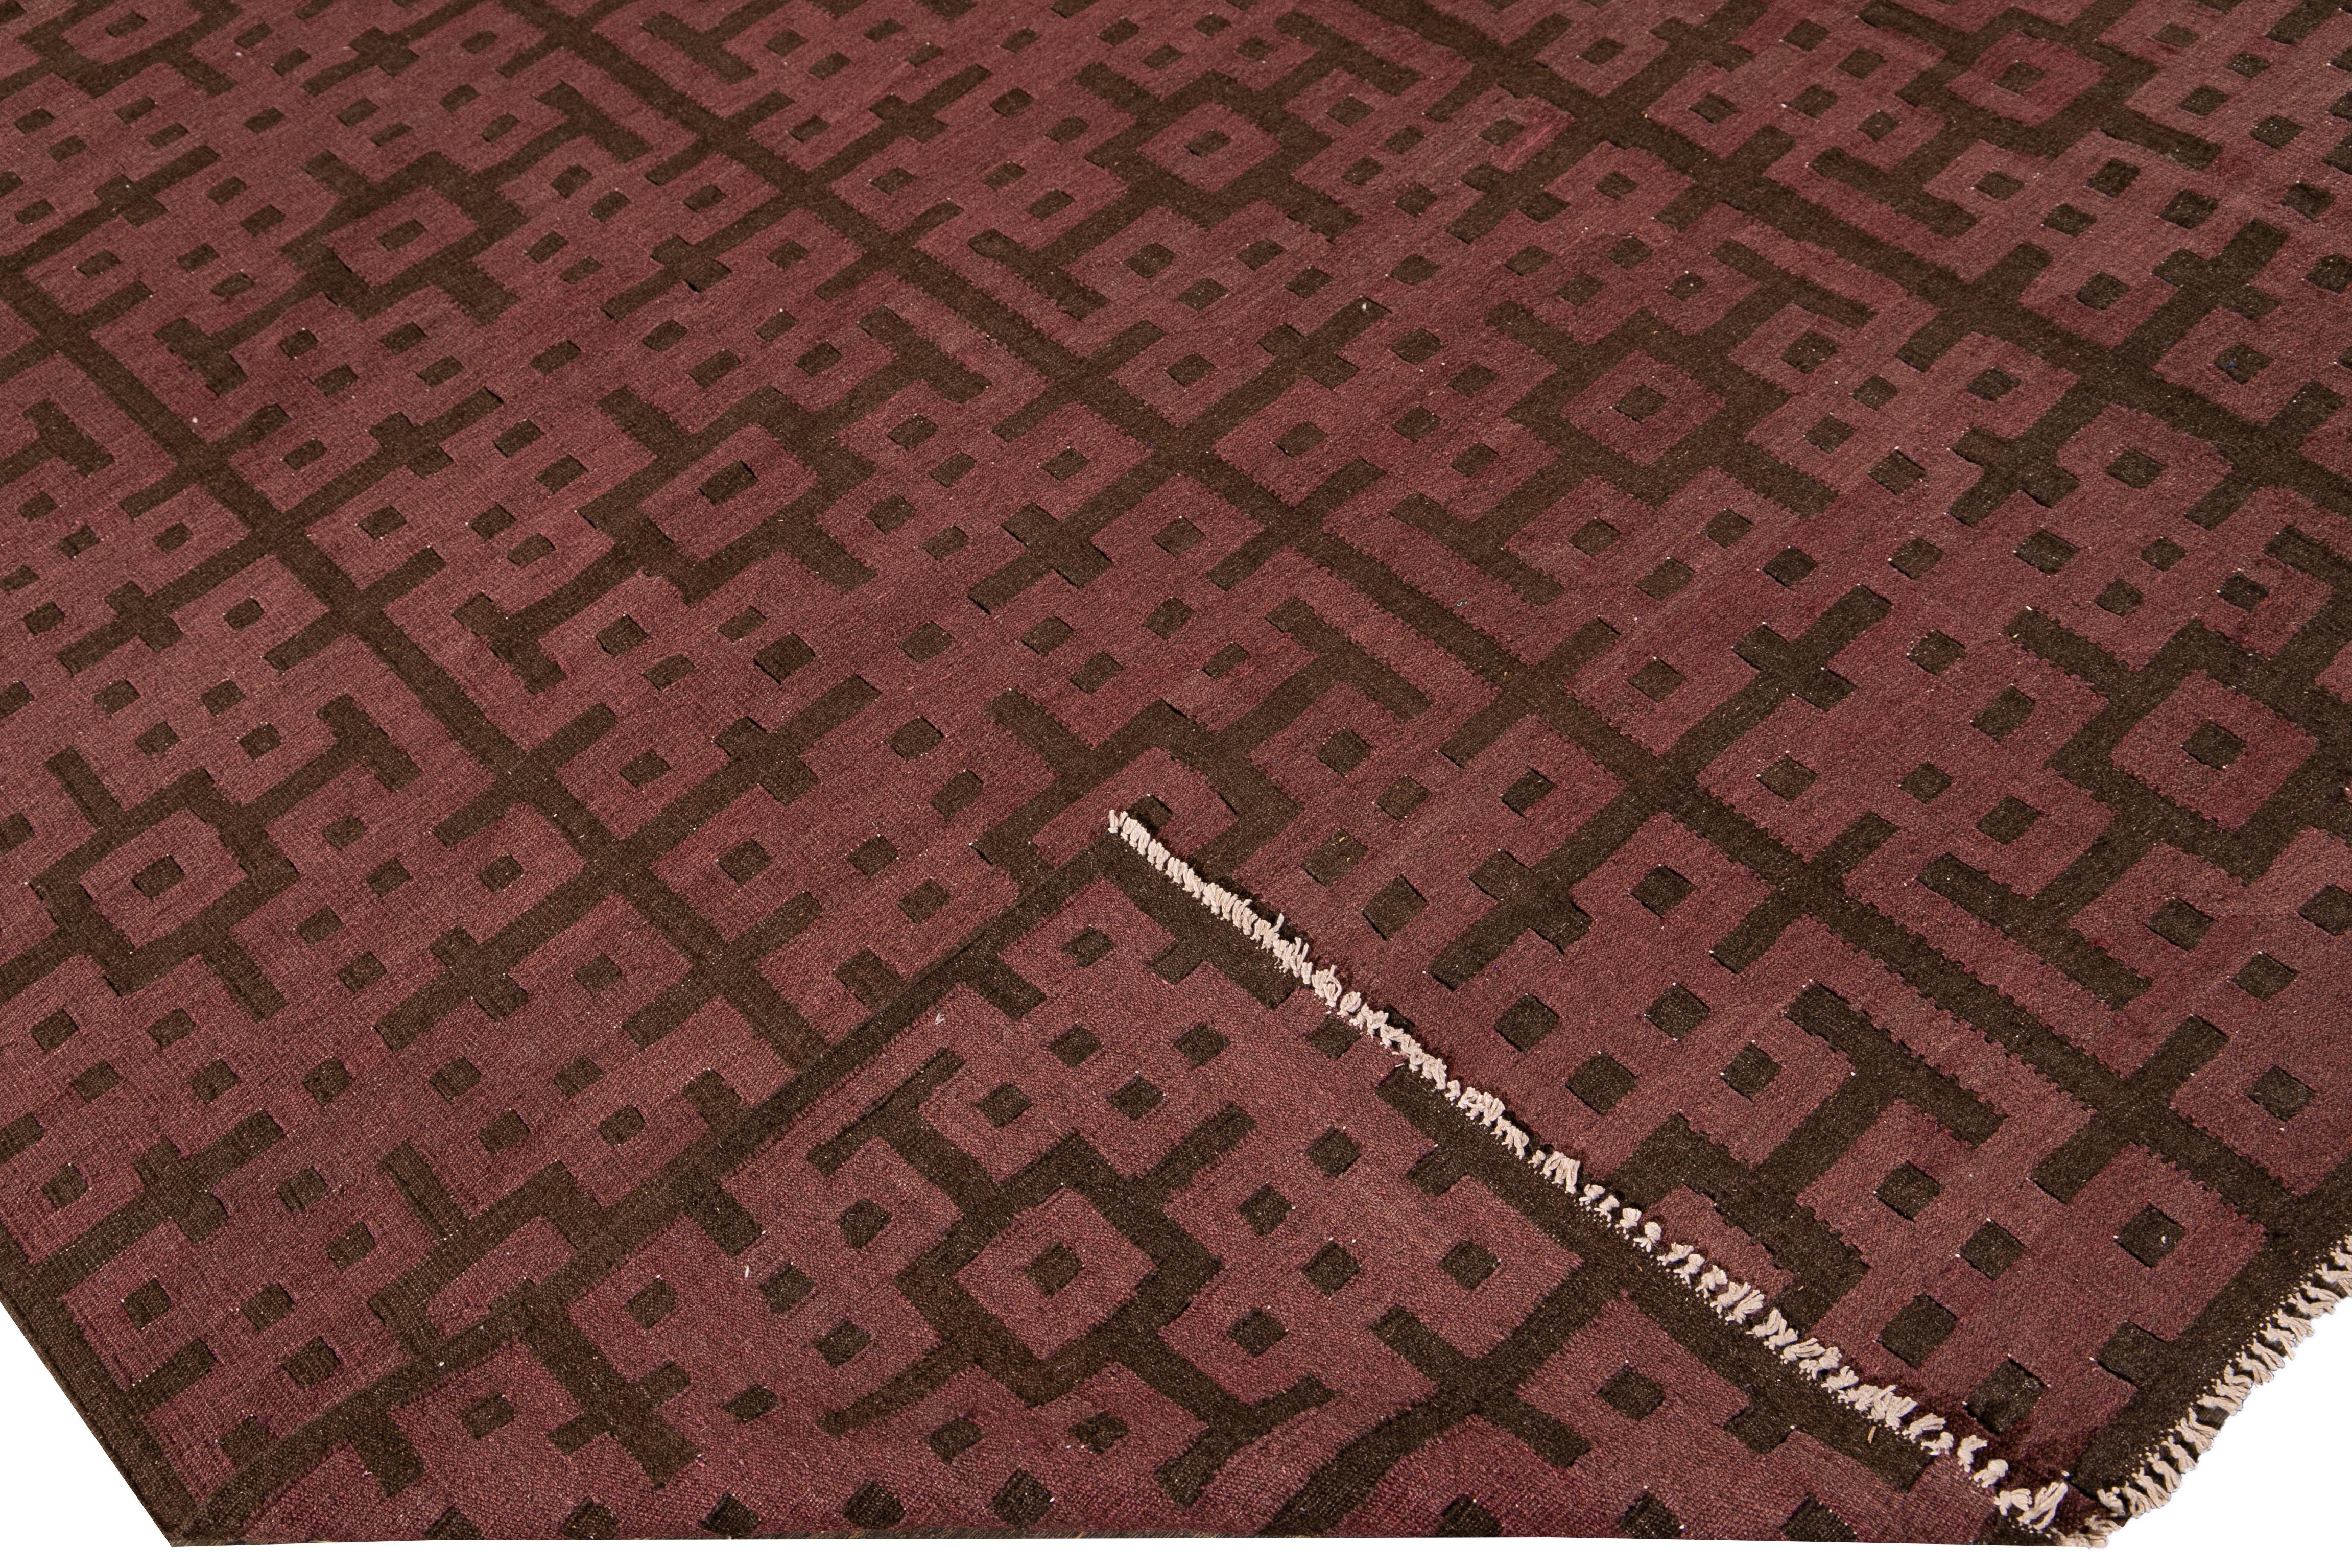 Schöner moderner flachgewebter Kilim-Teppich aus Wolle mit einem kastanienbraunen Feld. Dieses Kunstwerk hat braune Akzente in einem prächtigen geometrischen Muster.

Dieser Teppich misst: 9'10